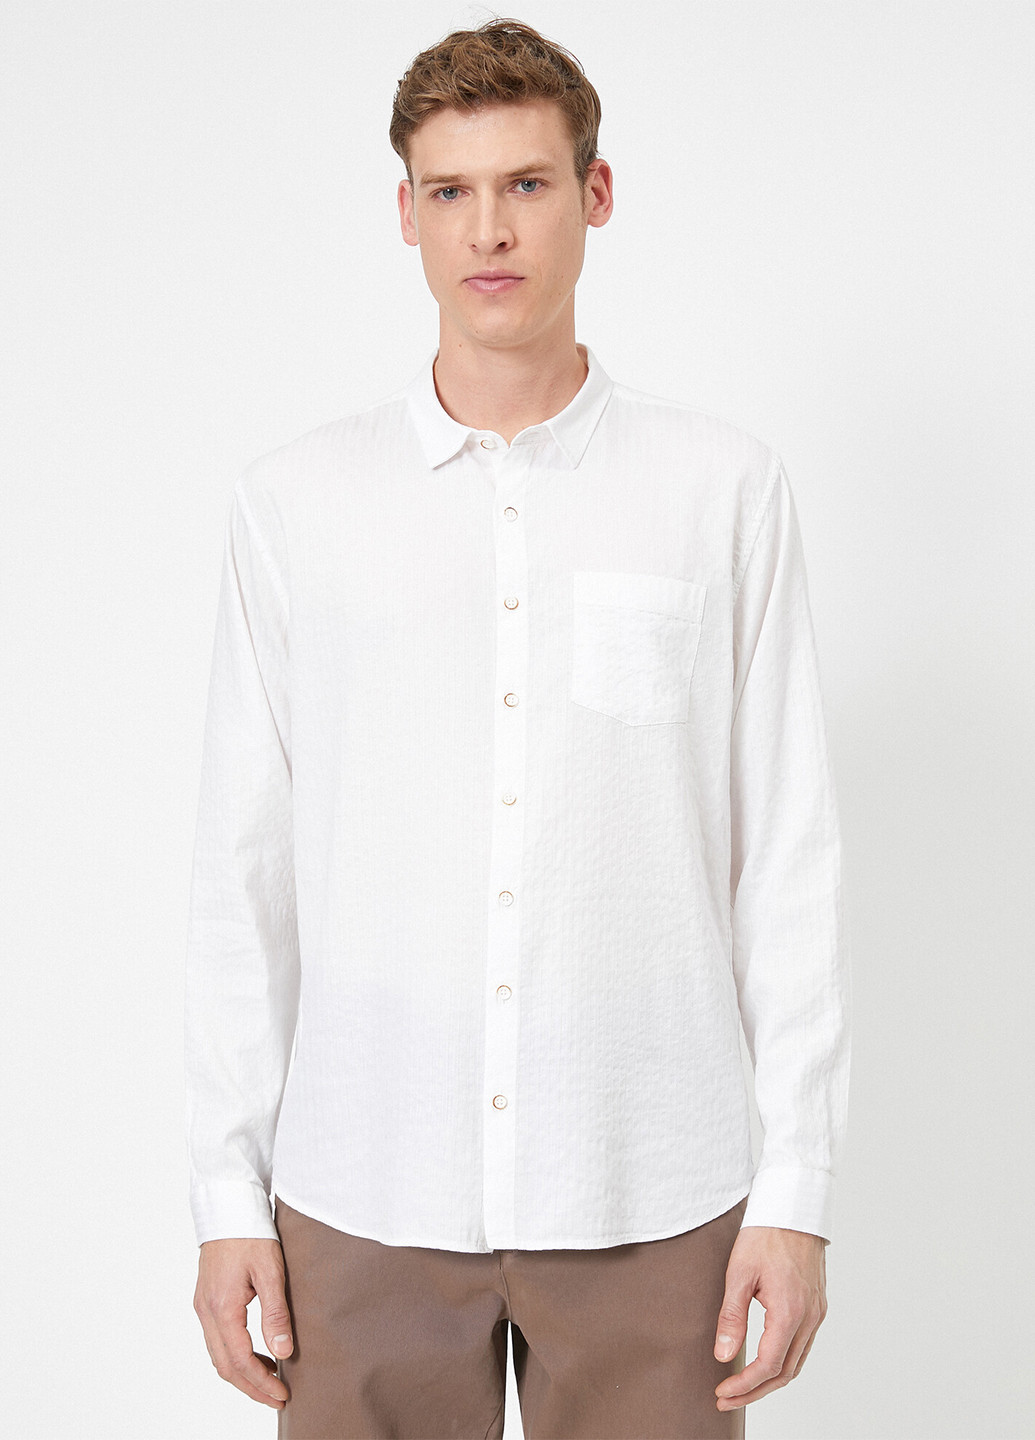 Белая классическая рубашка KOTON